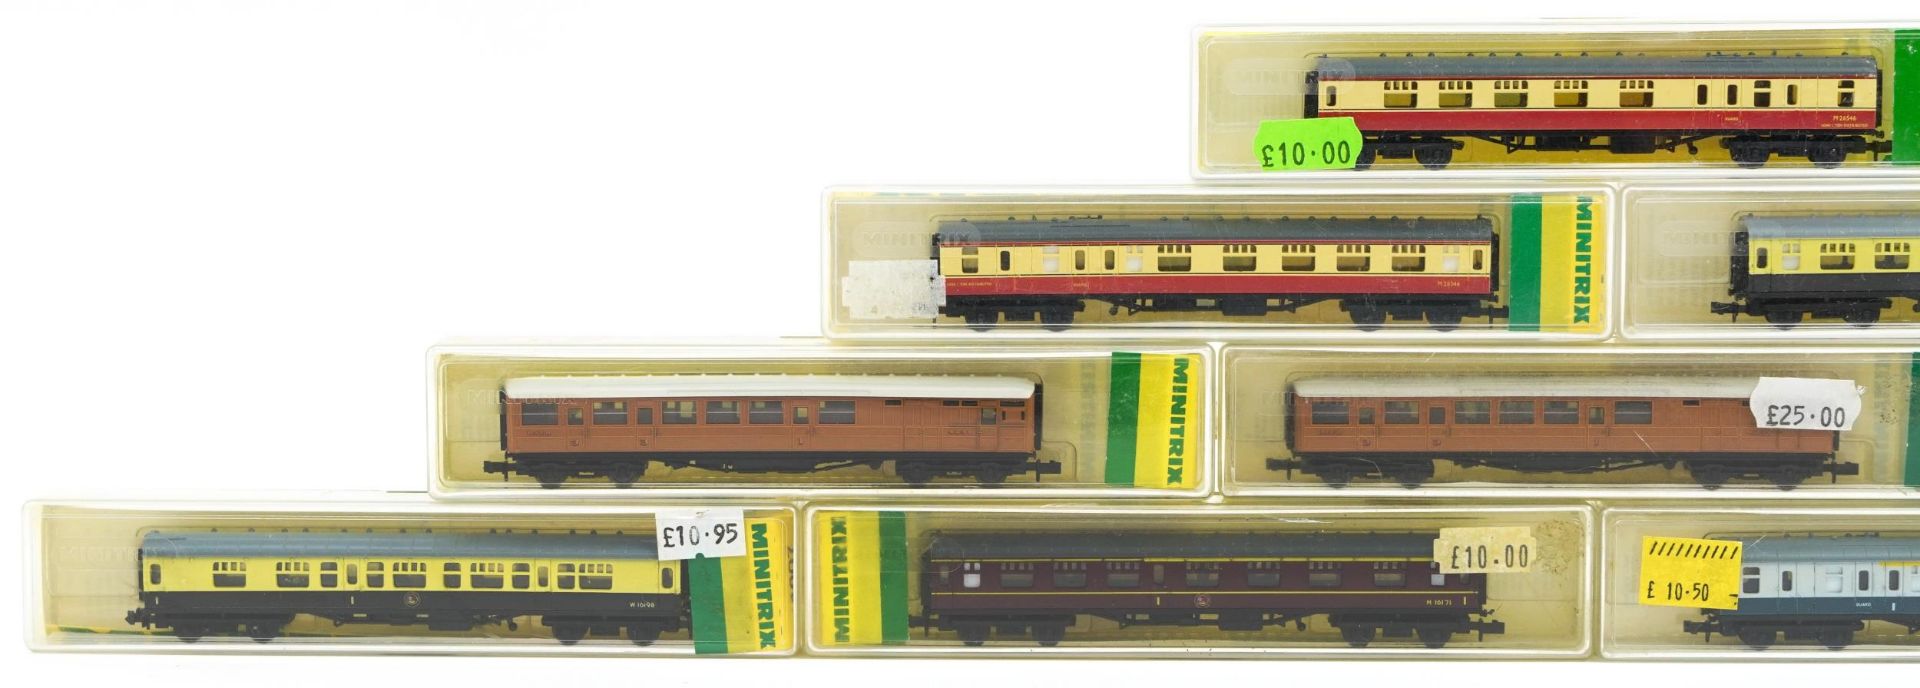 Ten Minitrix N gauge model railway carriages with cases, numbers 13003, 13004, 13005, 13006, - Bild 2 aus 5